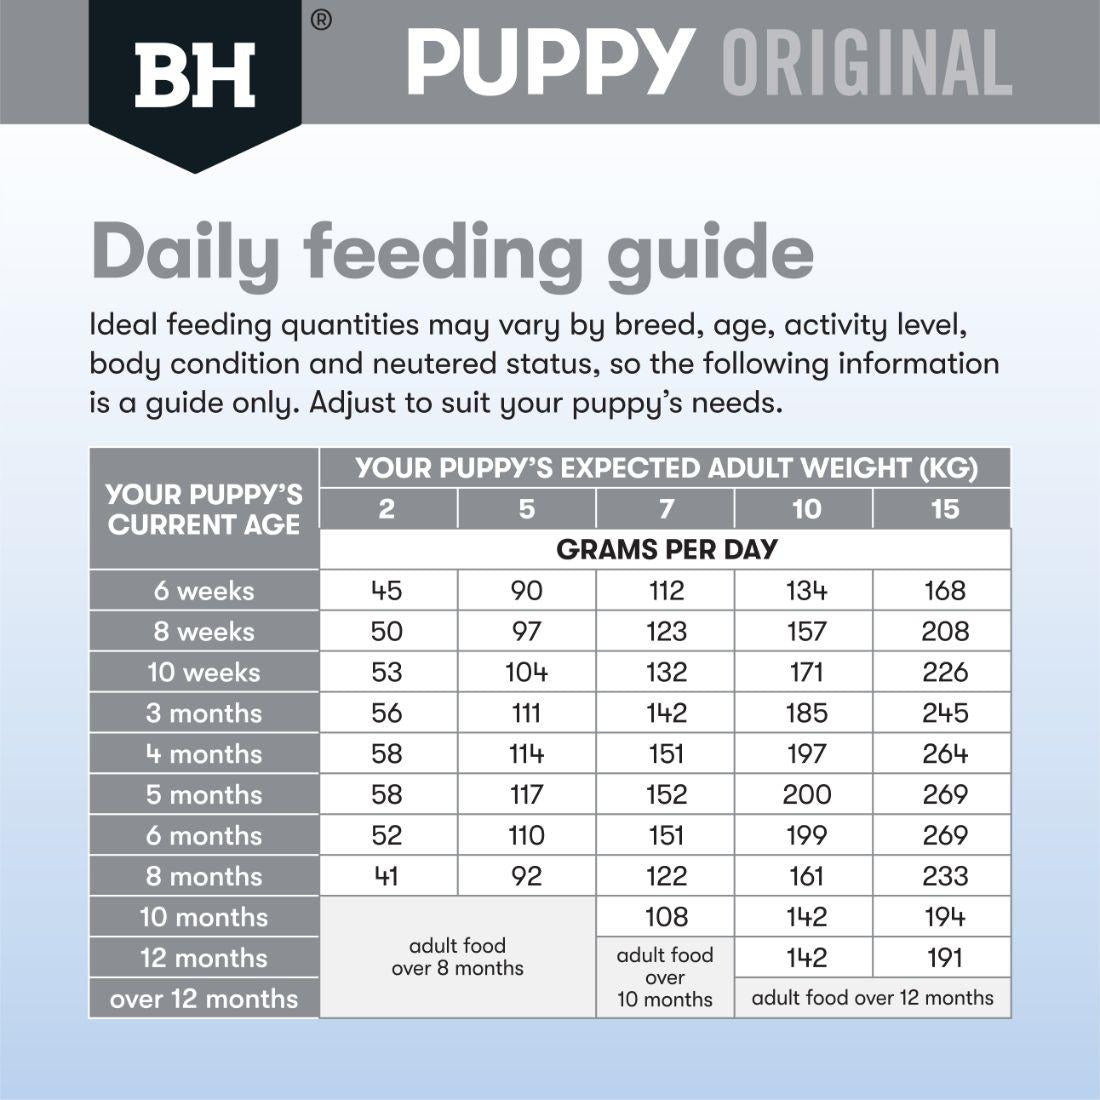 Black Hawk Puppy Small Breed Lamb & Rice Dry Dog food